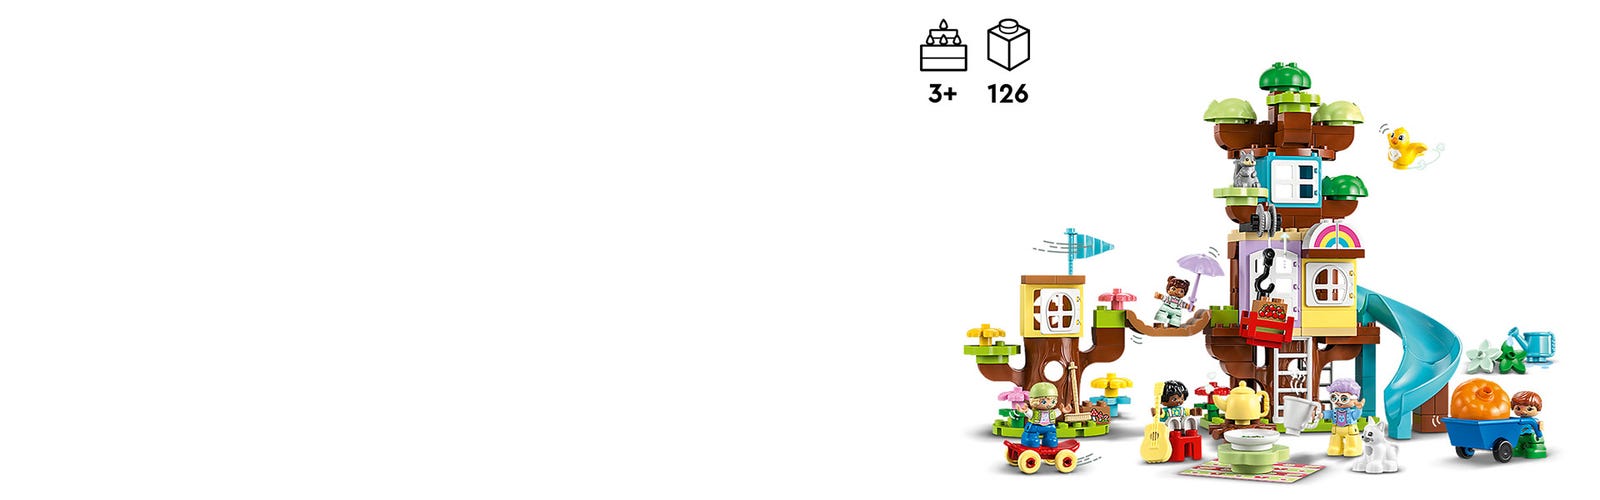 LEGO DUPLO 10993 - Juguete creativo de construcción 3 en 1 para niños  pequeños, incluye 8 figuras para enseñar habilidades sociales, jugar juntos  y